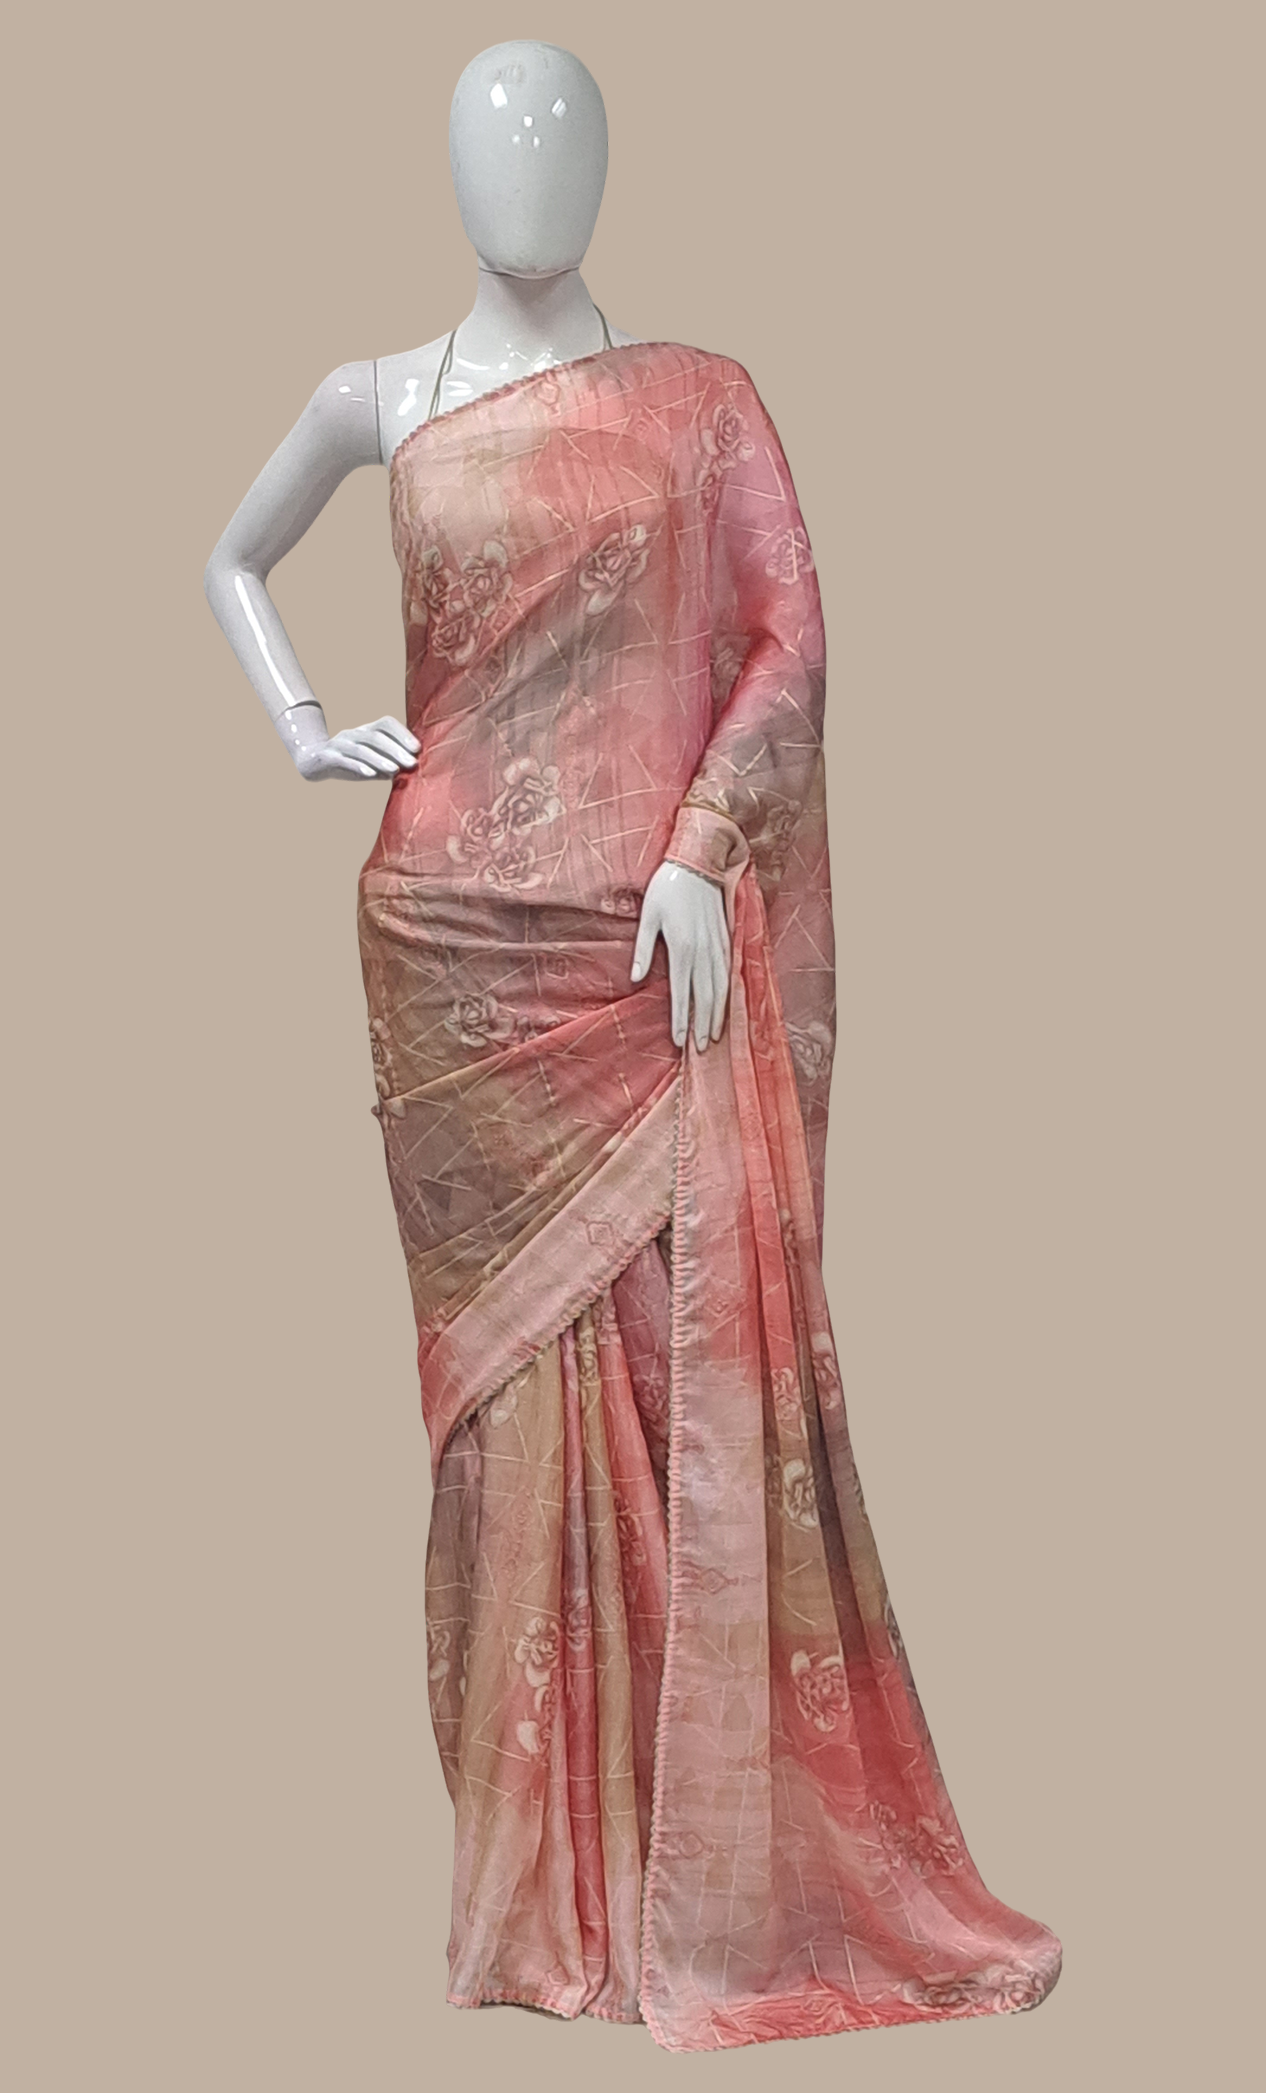 Rose Pink Printed Sari